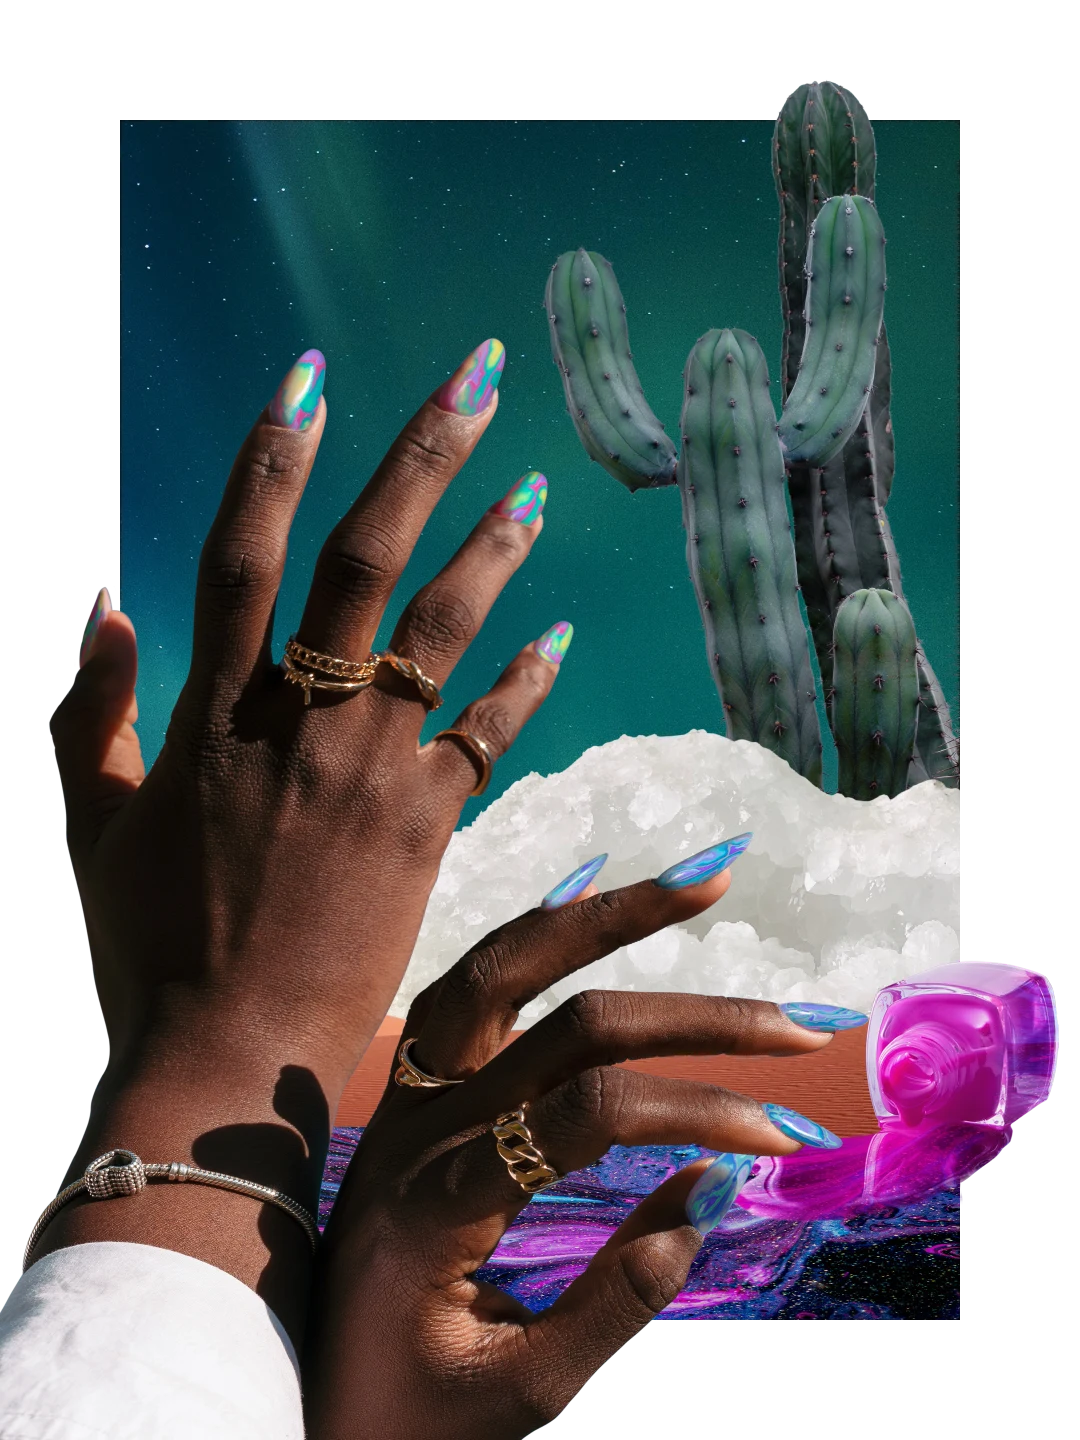 Collage de artículos con temática de uñas. Esmalte azul, rosa y violeta derramándose de un frasco a la derecha. Manos de una mujer de piel oscura con uñas multicolor a la izquierda. Cactus grandes en la parte superior derecha, cristales de sal debajo.
